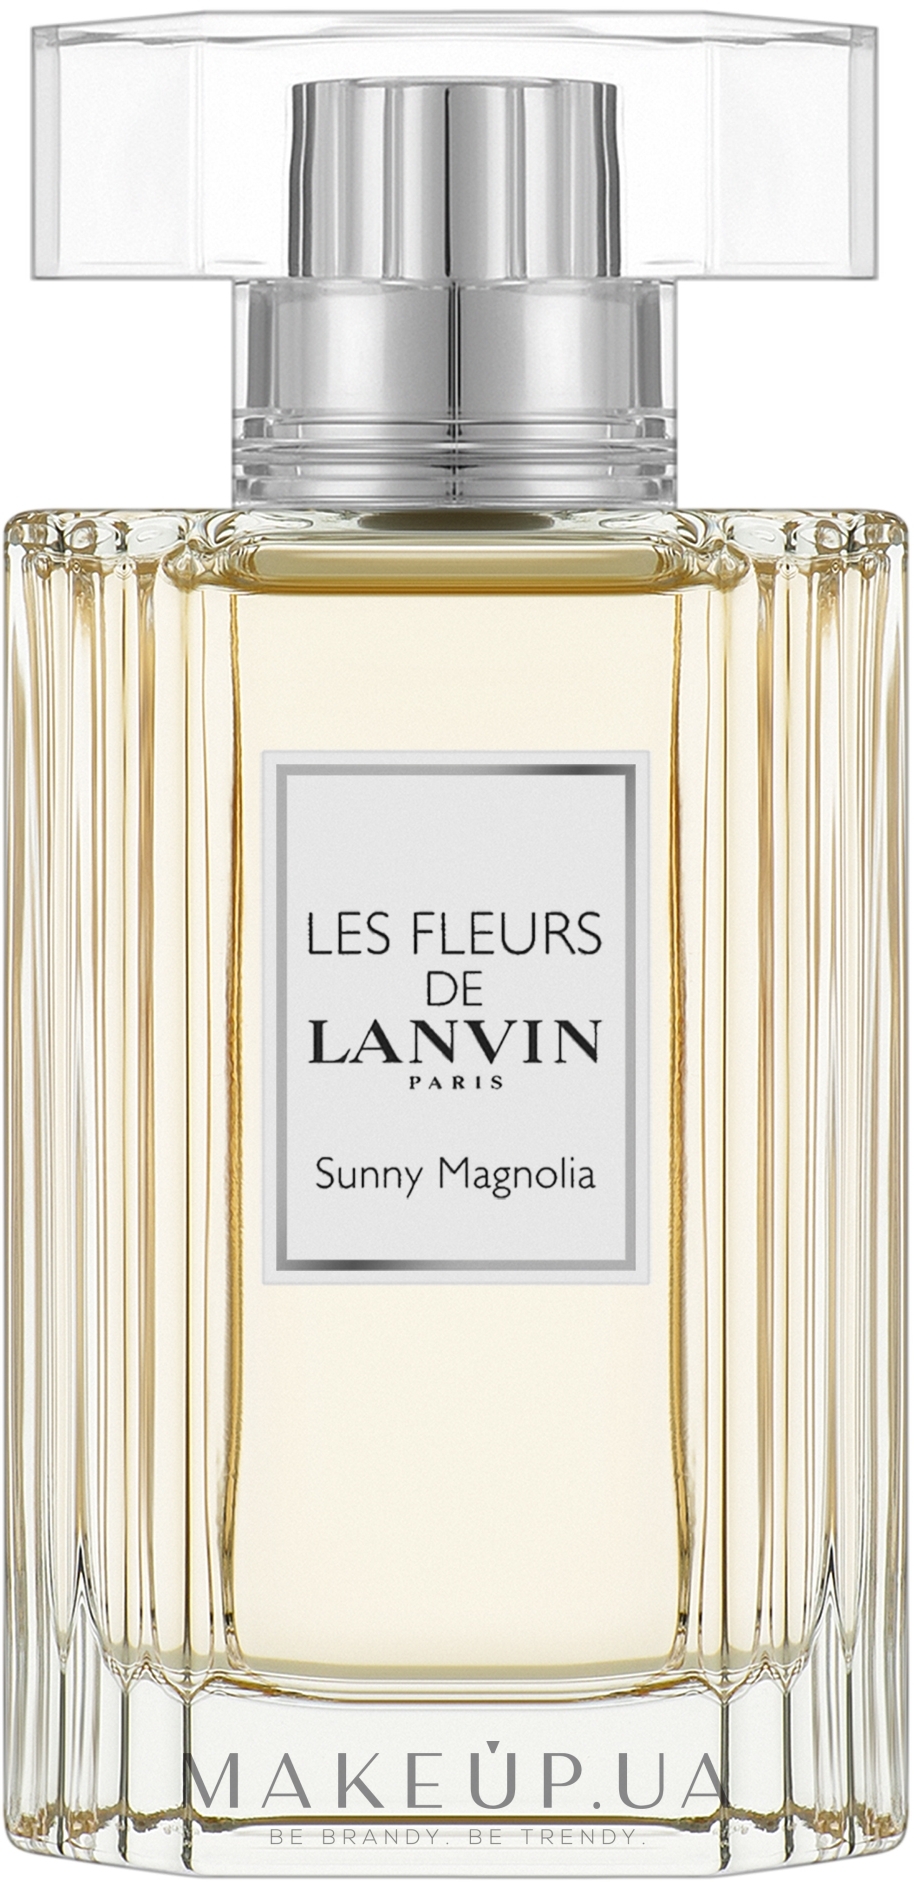 Lanvin sunny magnolia